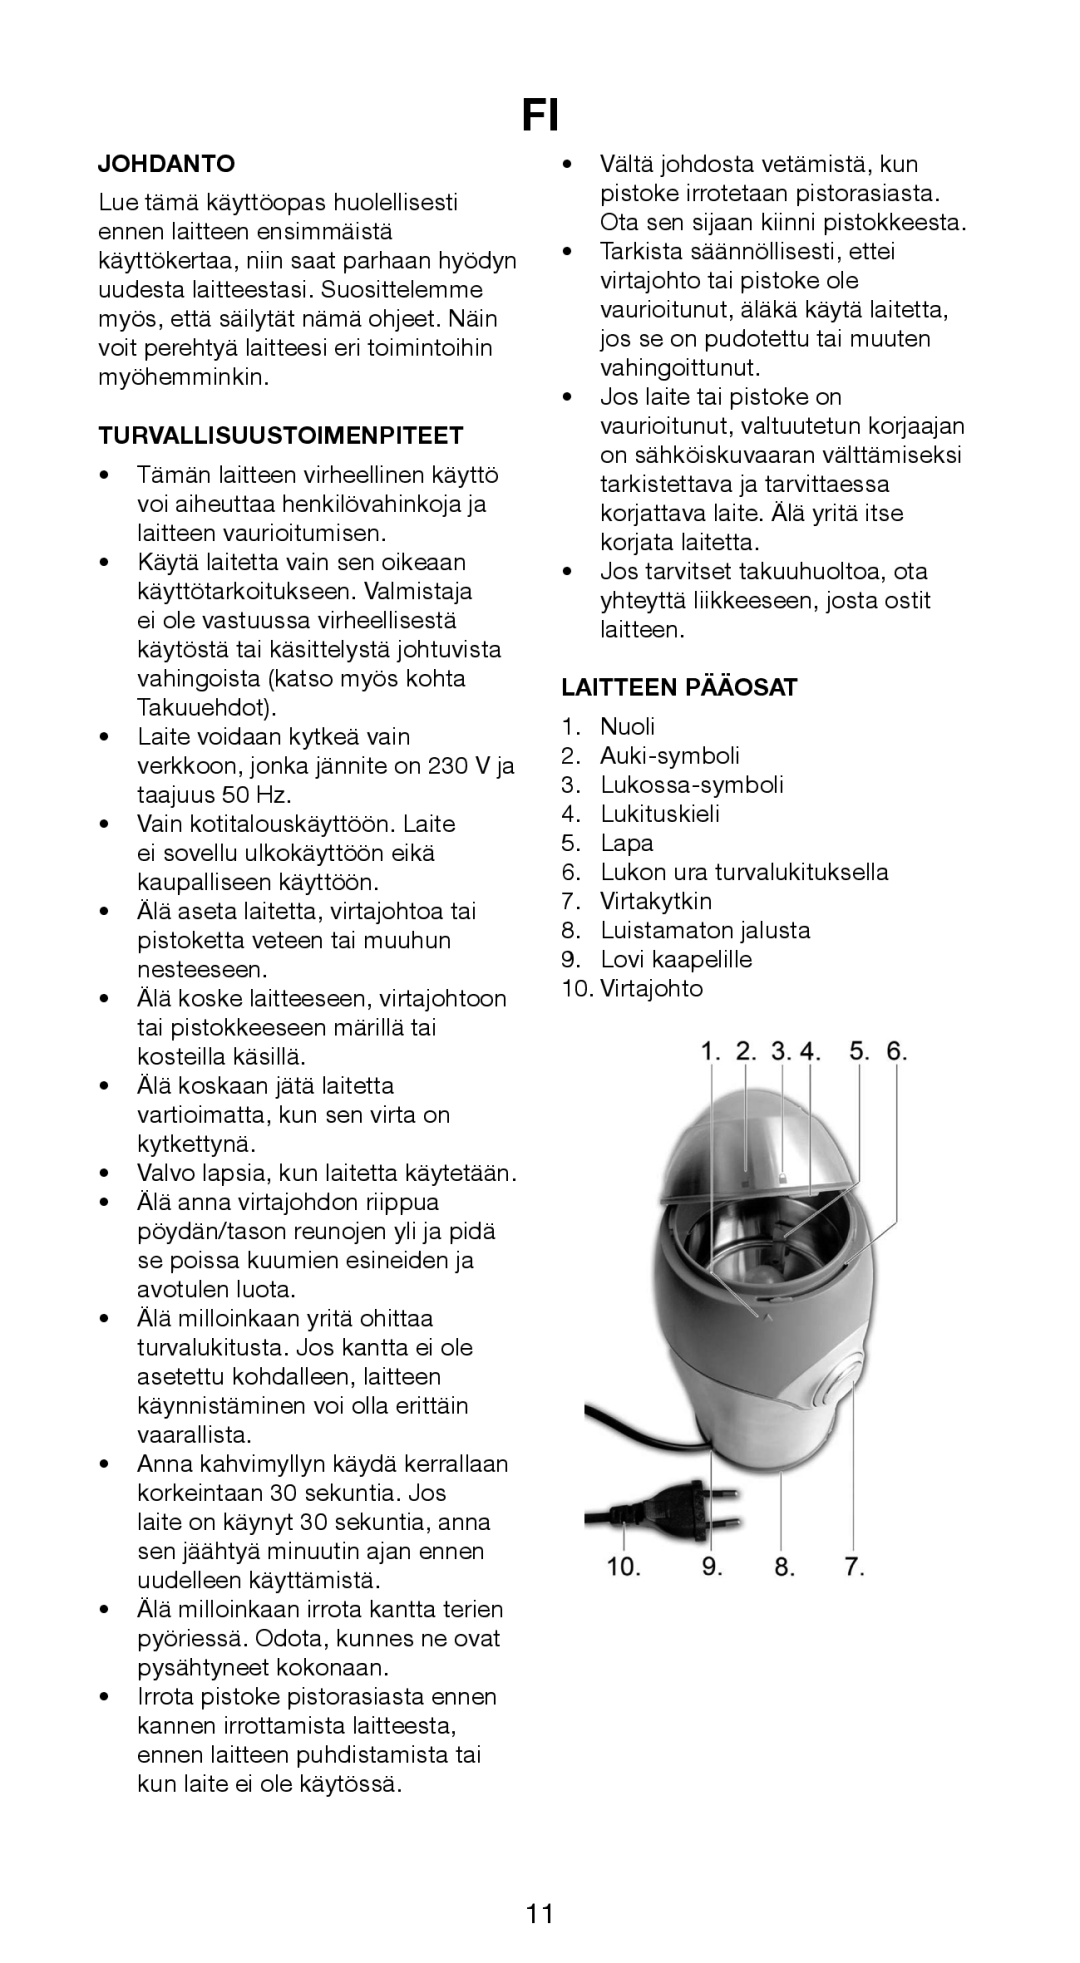 Butler 645-141 manual Johdanto, Turvallisuustoimenpiteet, Laitteen Pääosat 